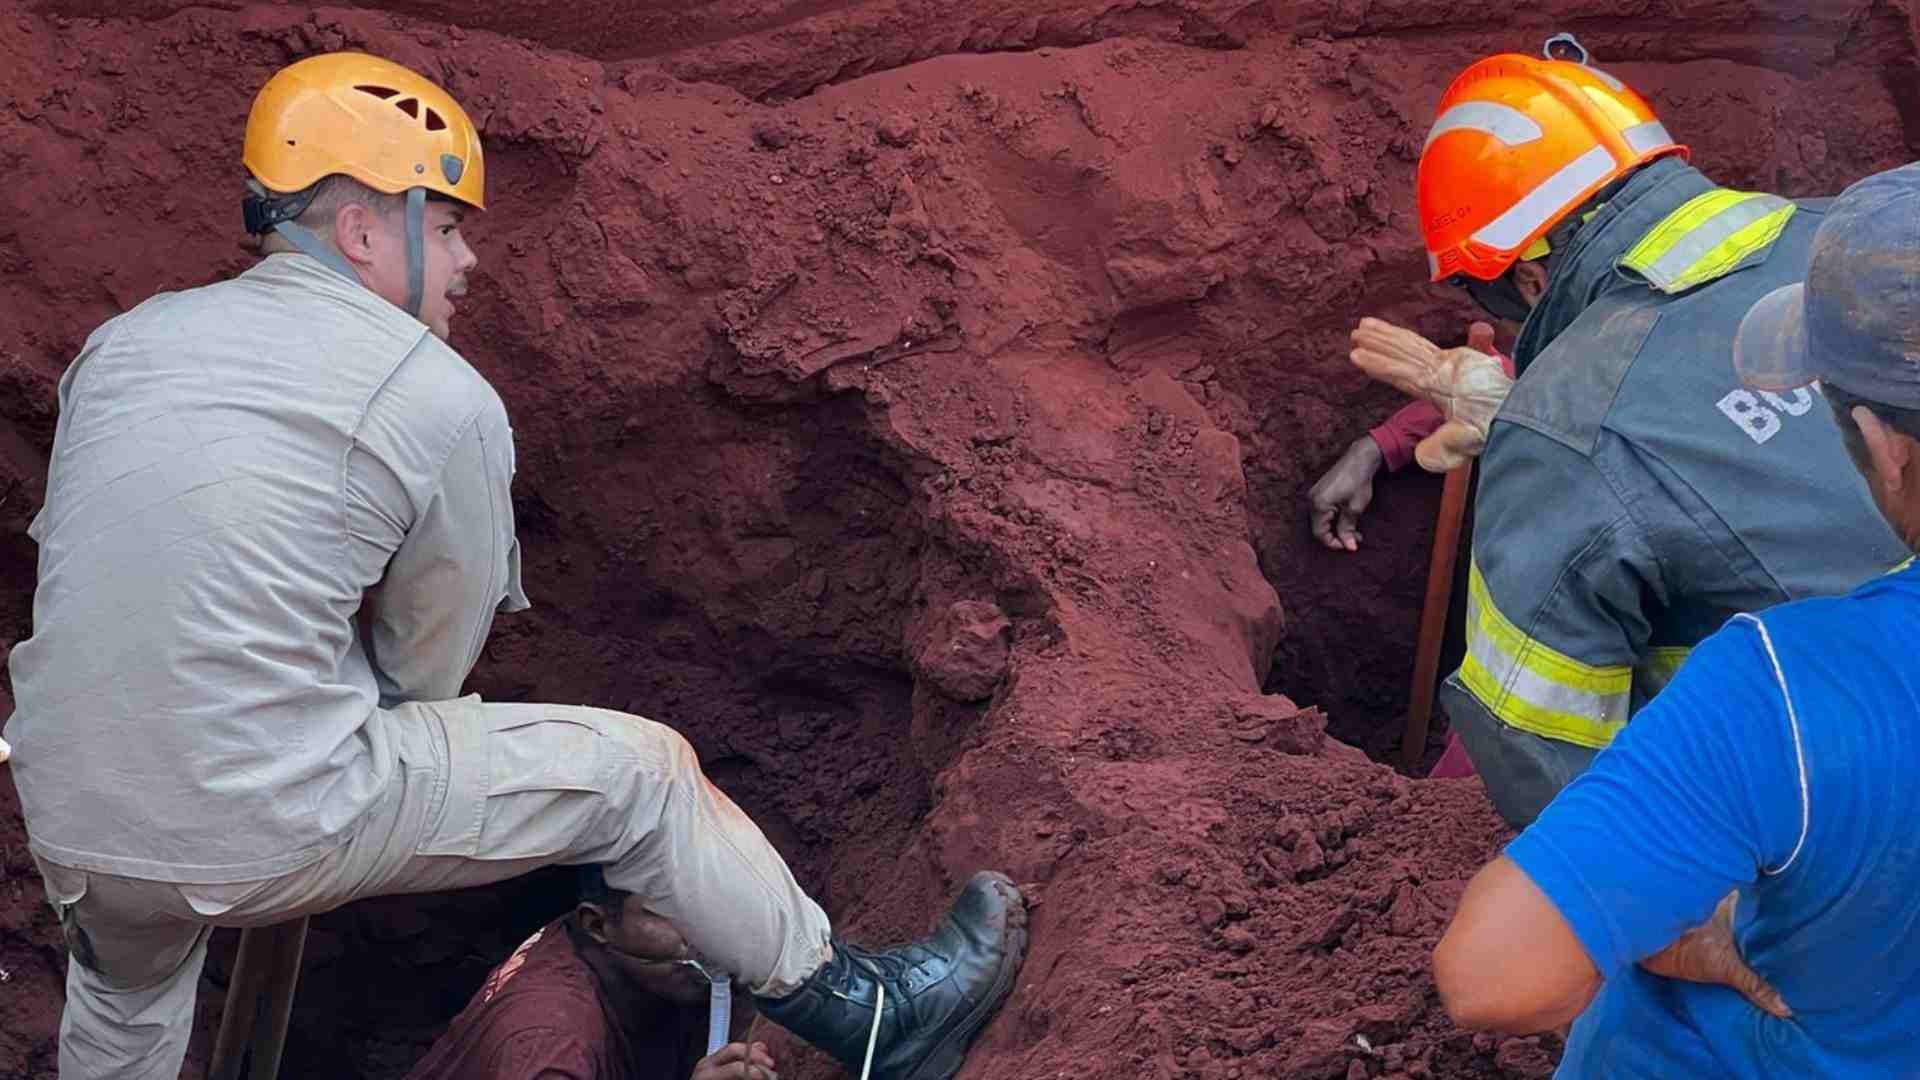 Trabalhadores são socorridos após ficarem soterrados em obra de drenagem em MS